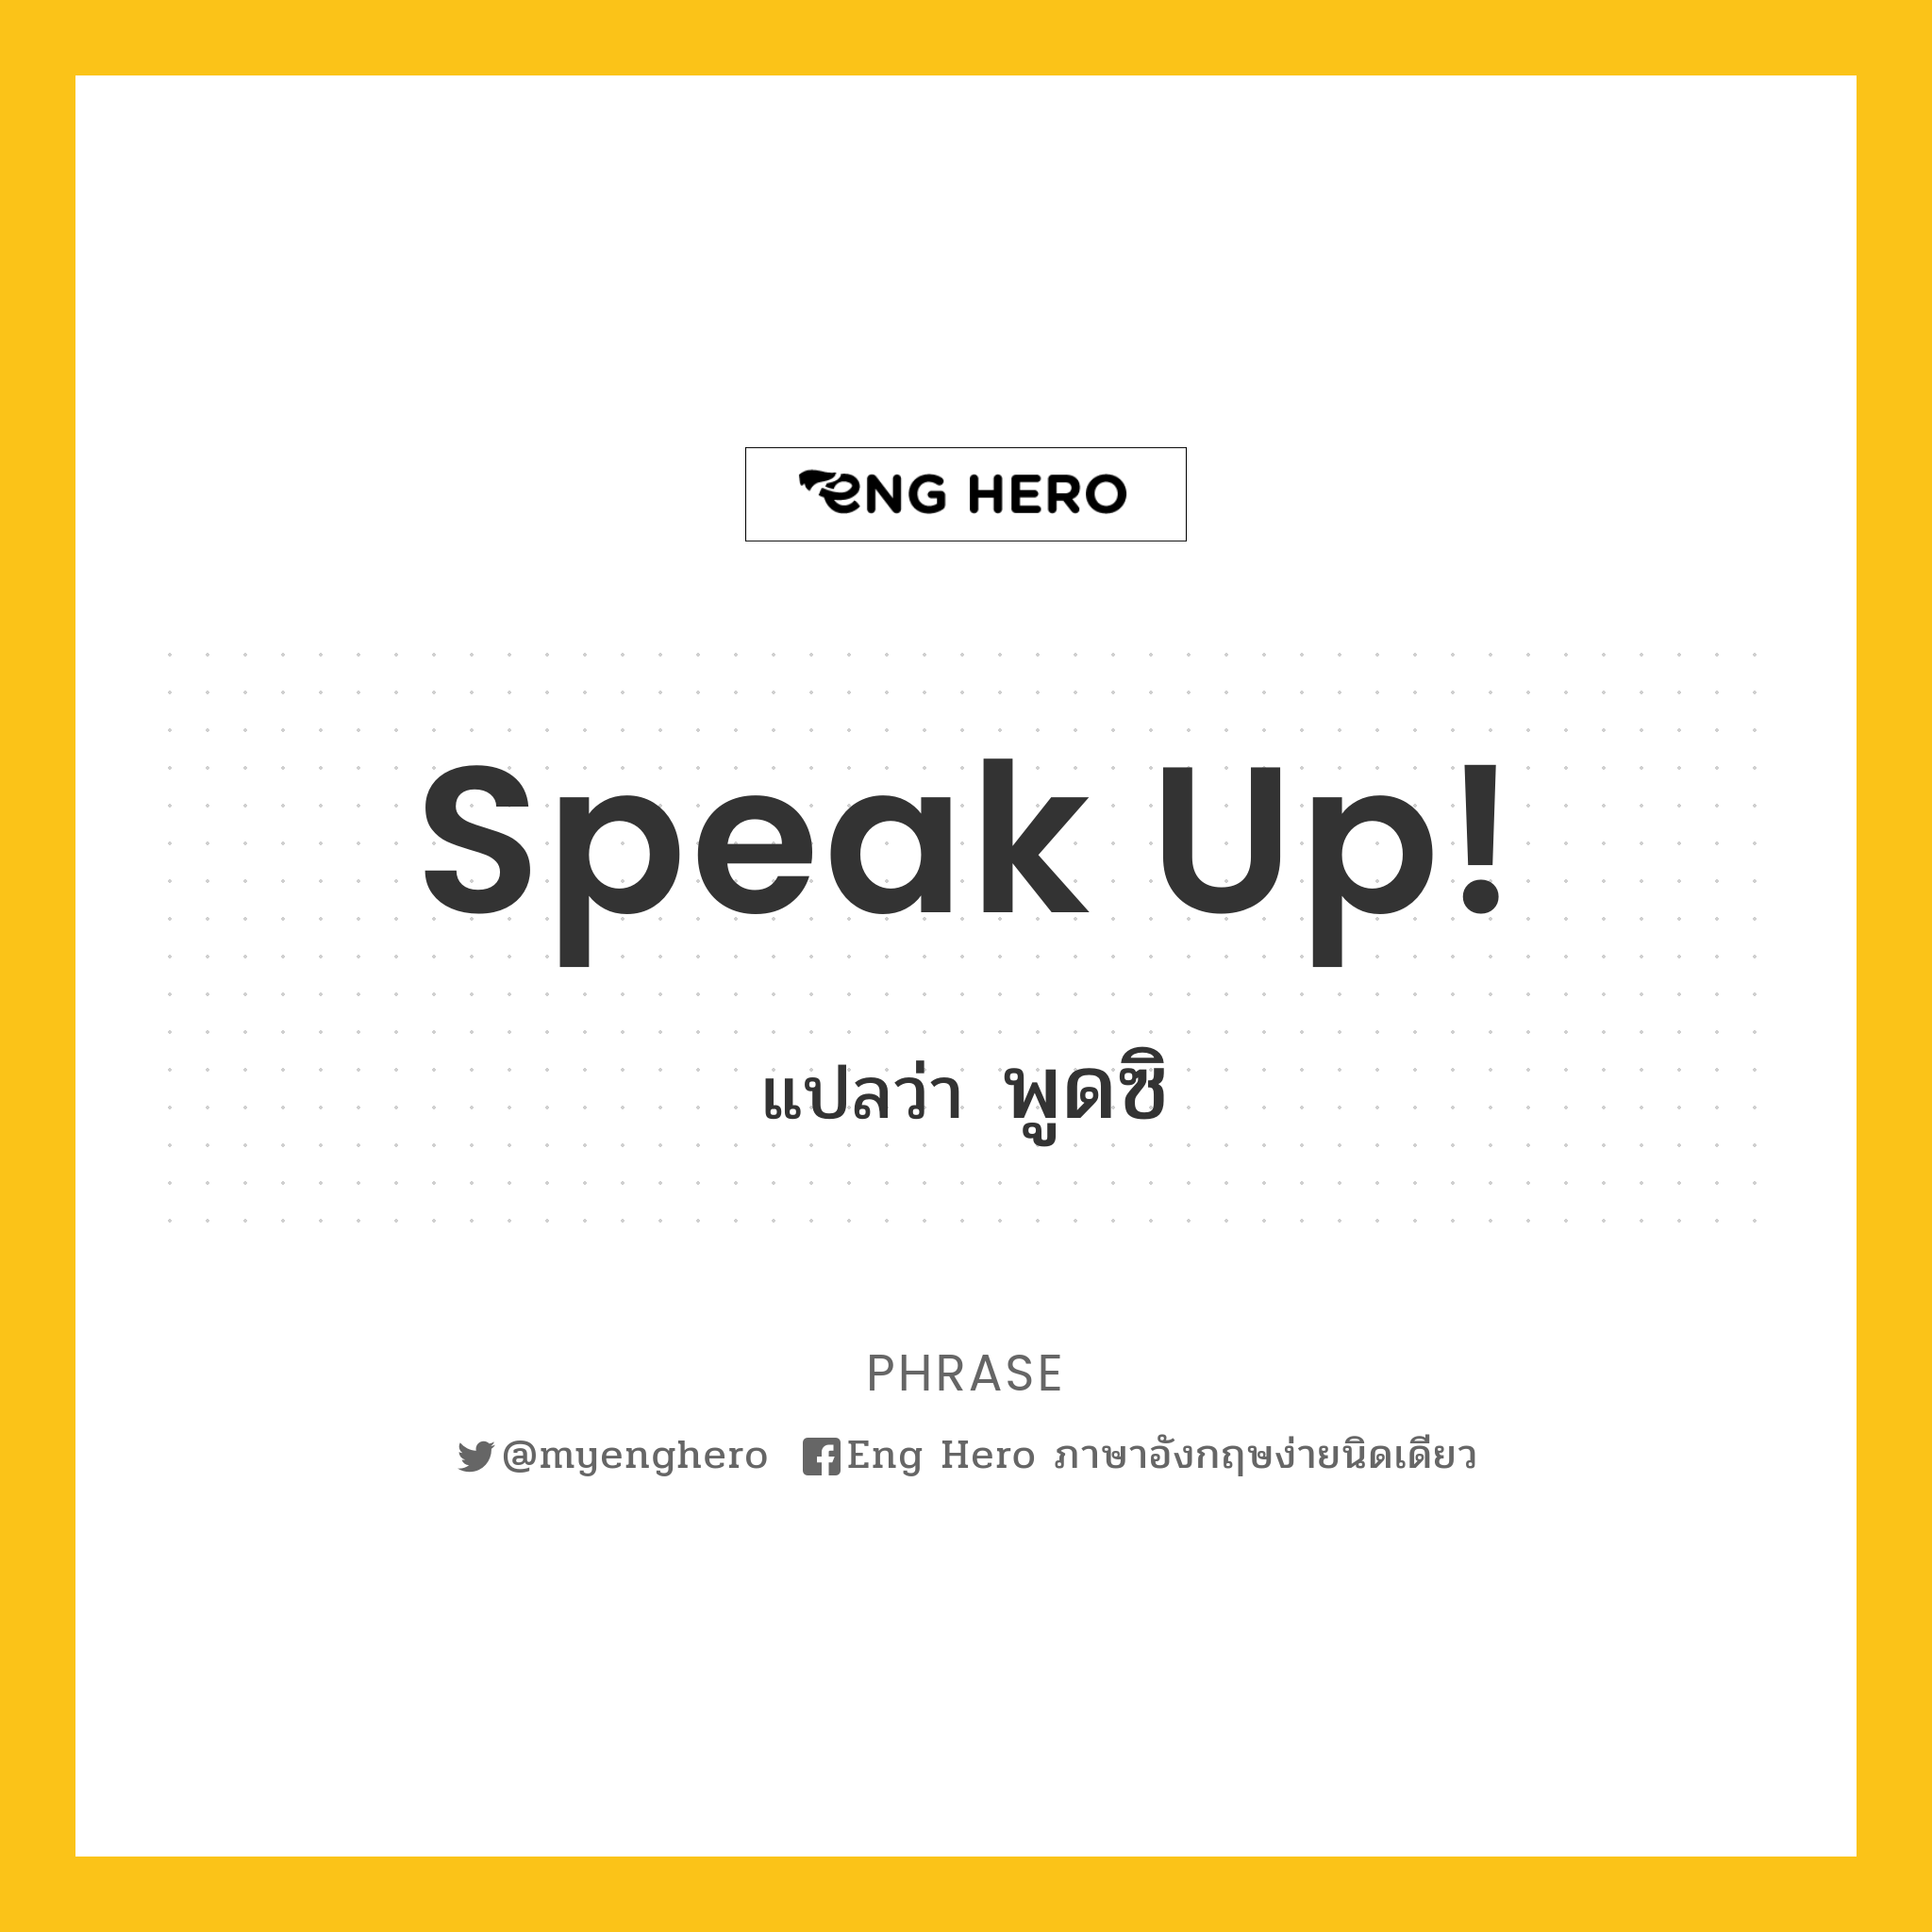 Speak up!